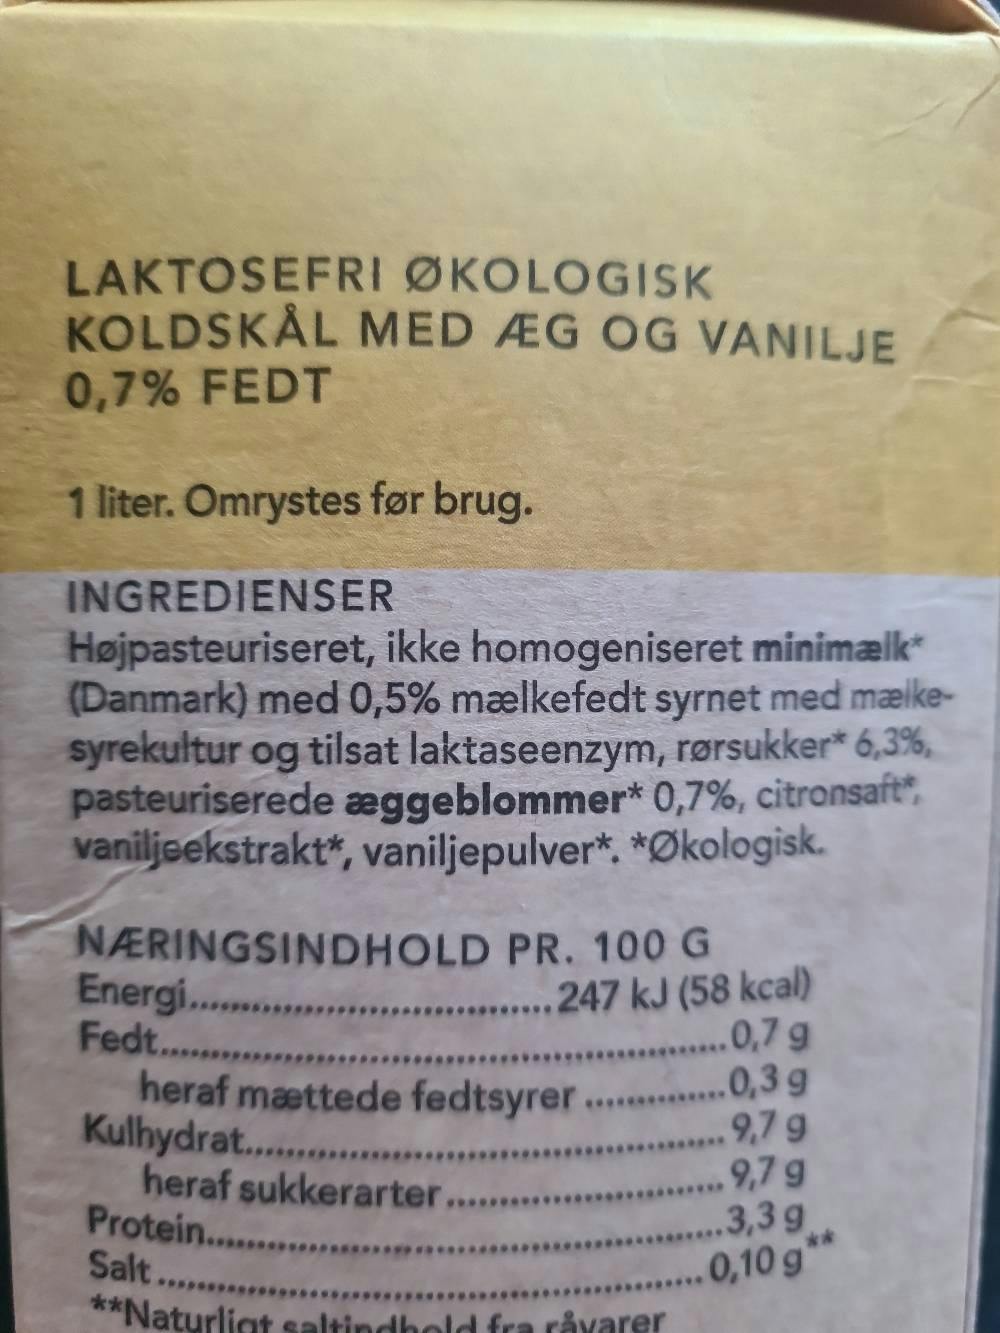 Ingrediensliste - Laktosefri koldskål, Thise